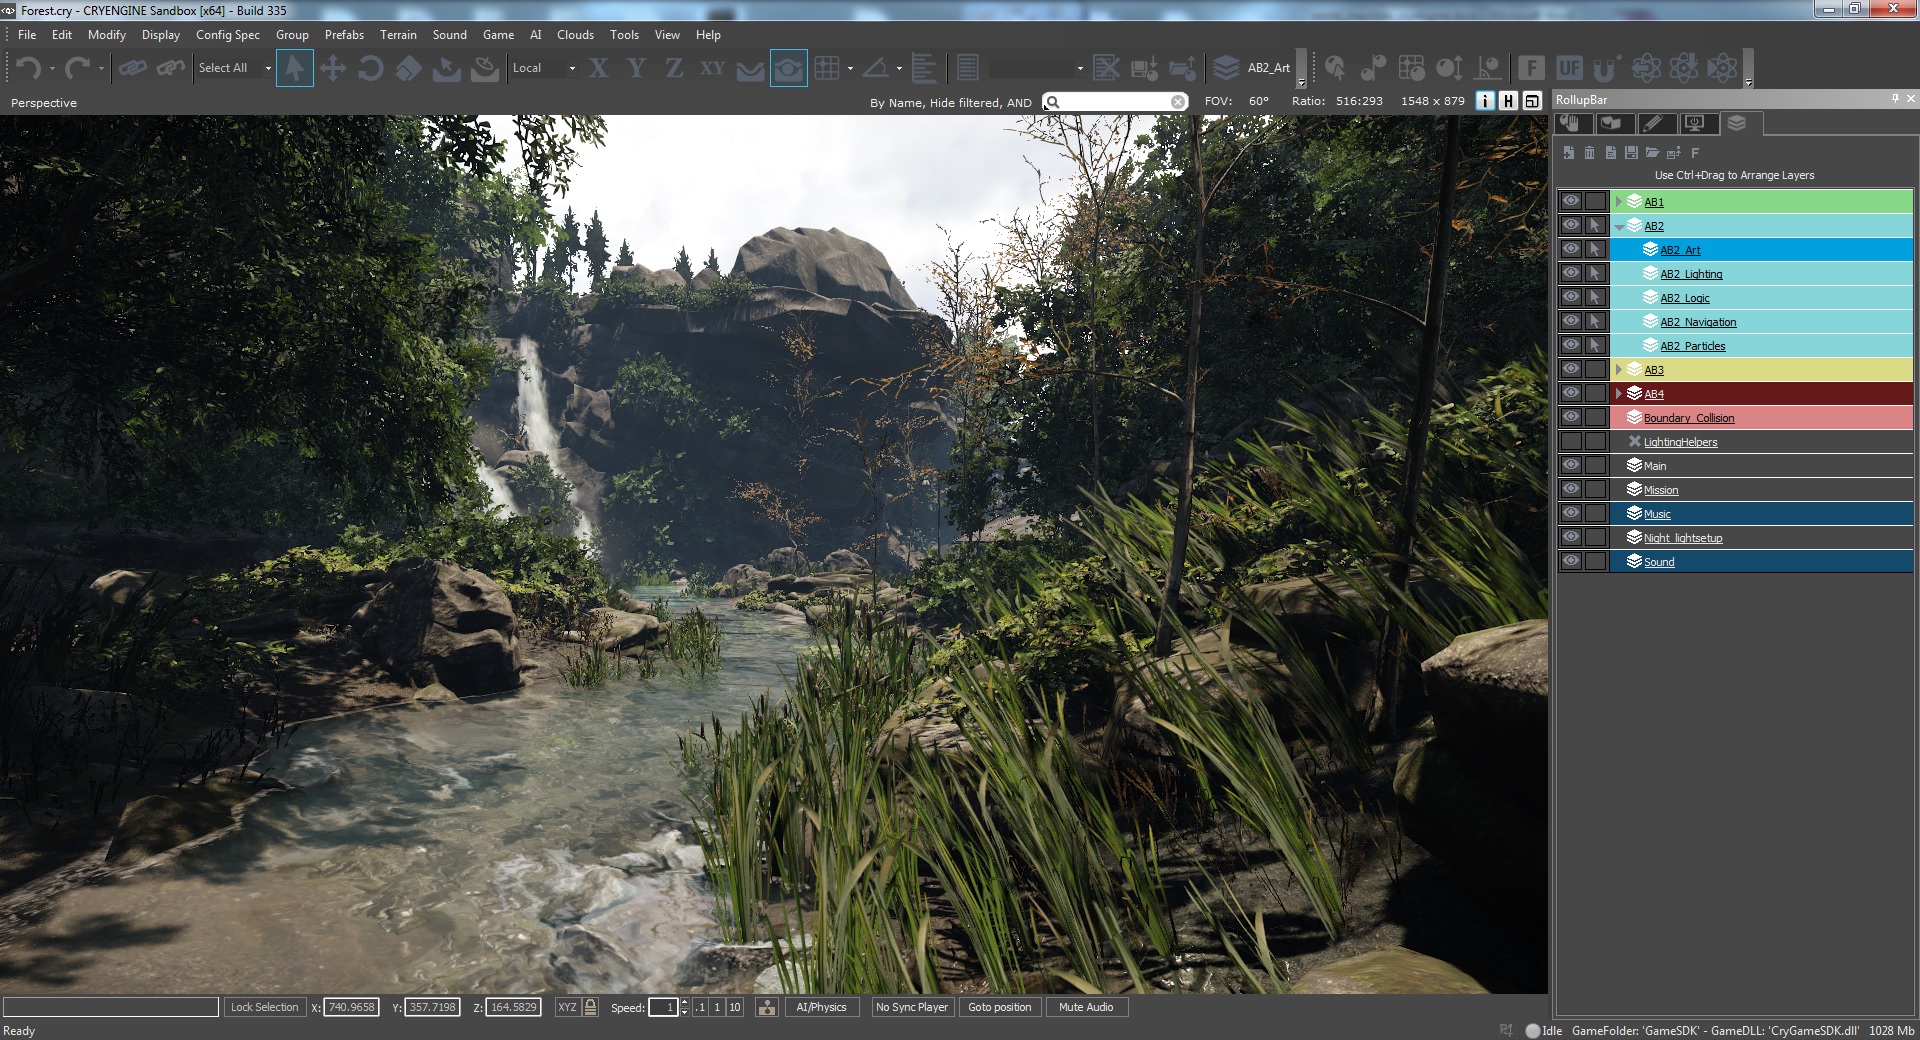 CryENGINE 3 SDK - game engine gratuita dos criadores de Crysis